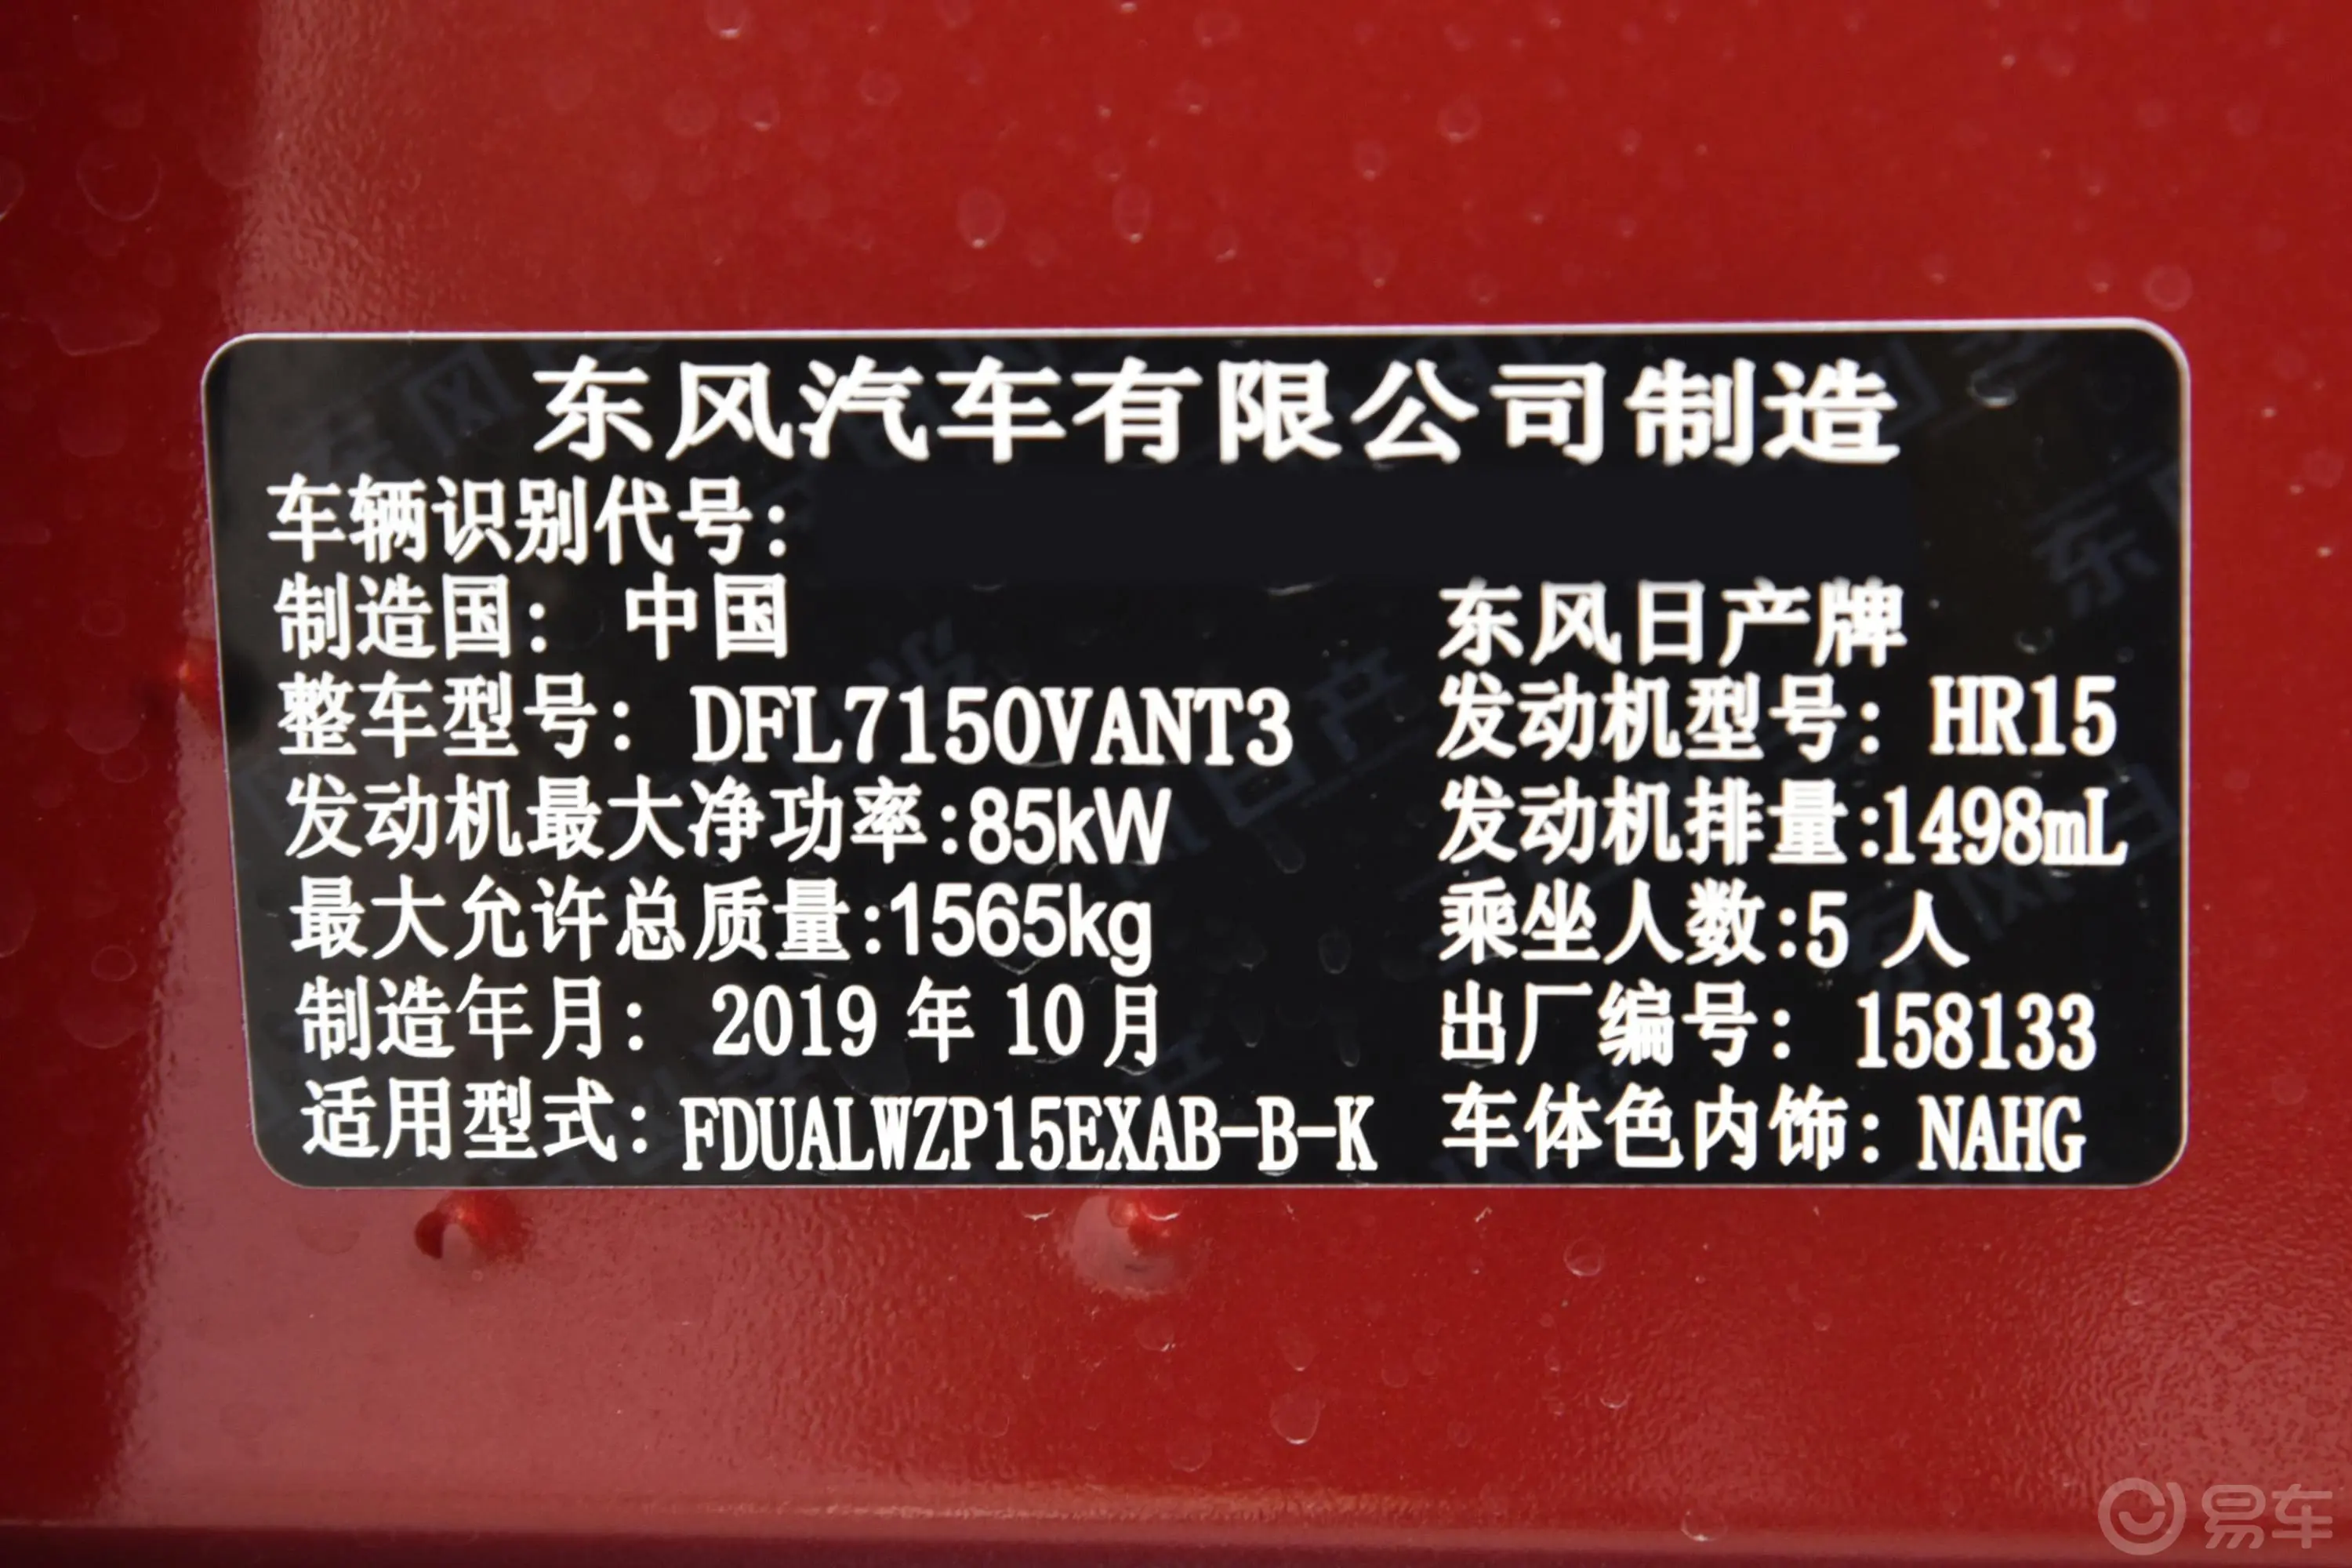 劲客1.5L CVT 智联尊享版车辆信息铭牌